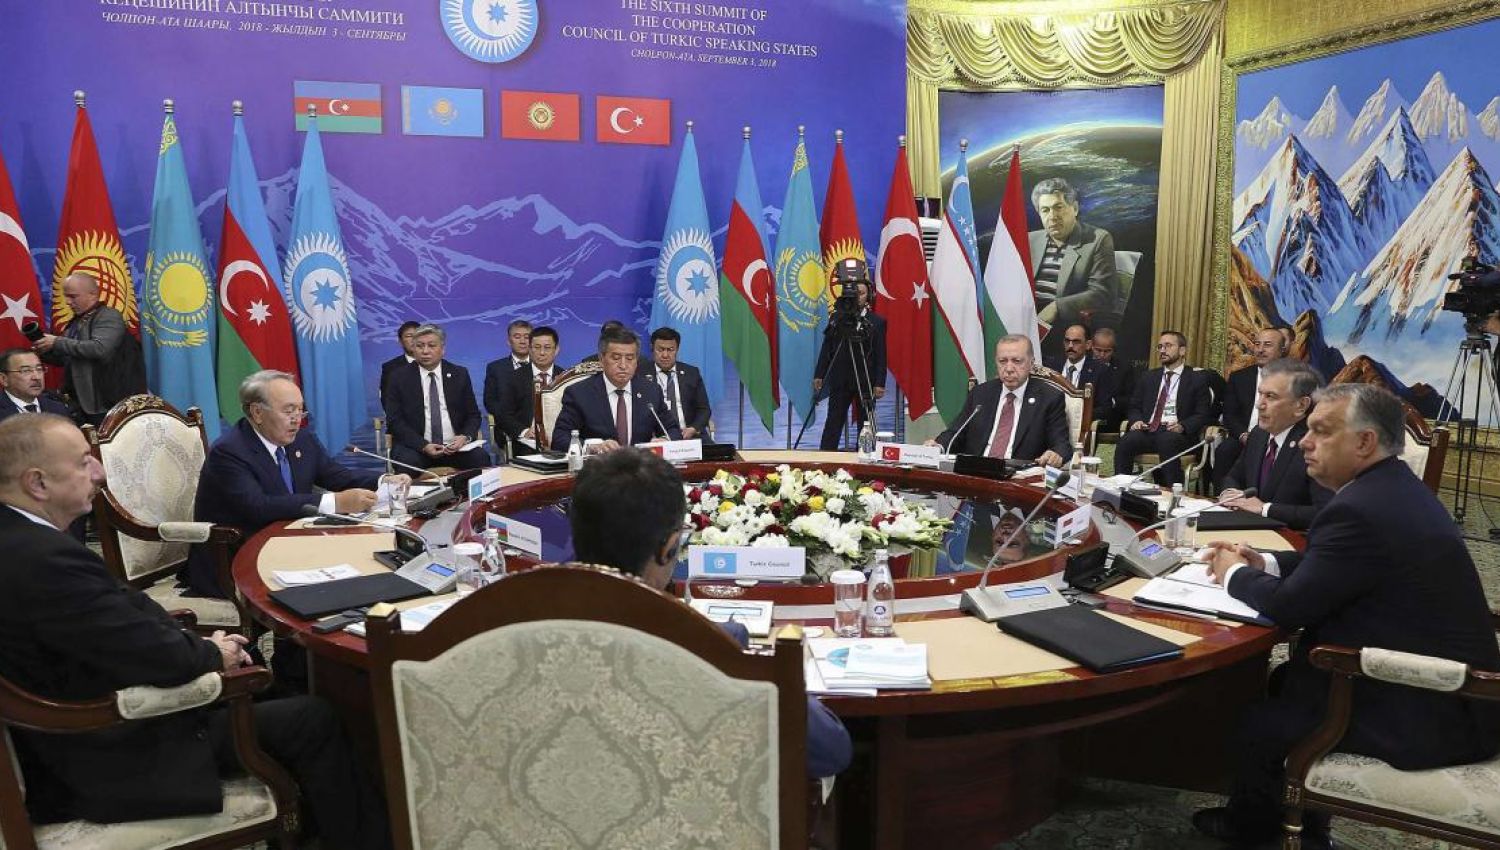 منظمة التعاون الاقتصادي "اكو" والمجلس التركي